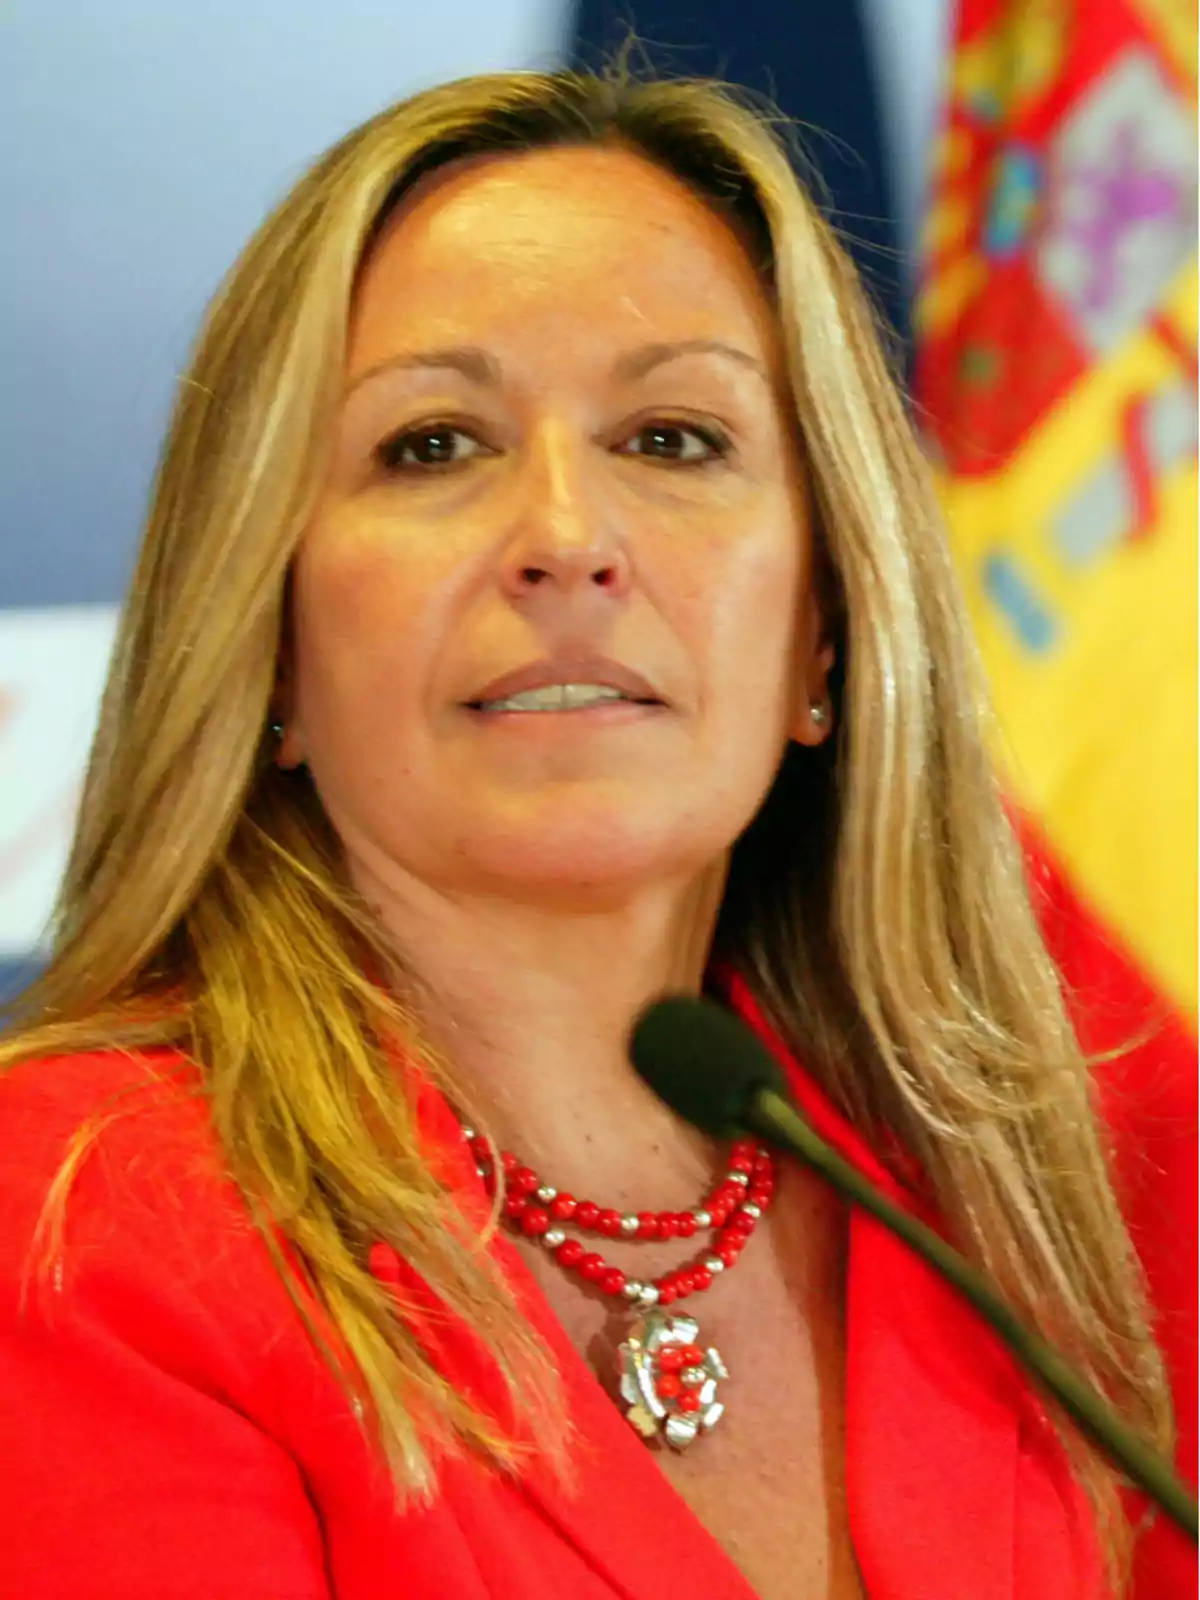 Mujer con cabello rubio y chaqueta roja hablando frente a un micrófono con una bandera de España en el fondo.